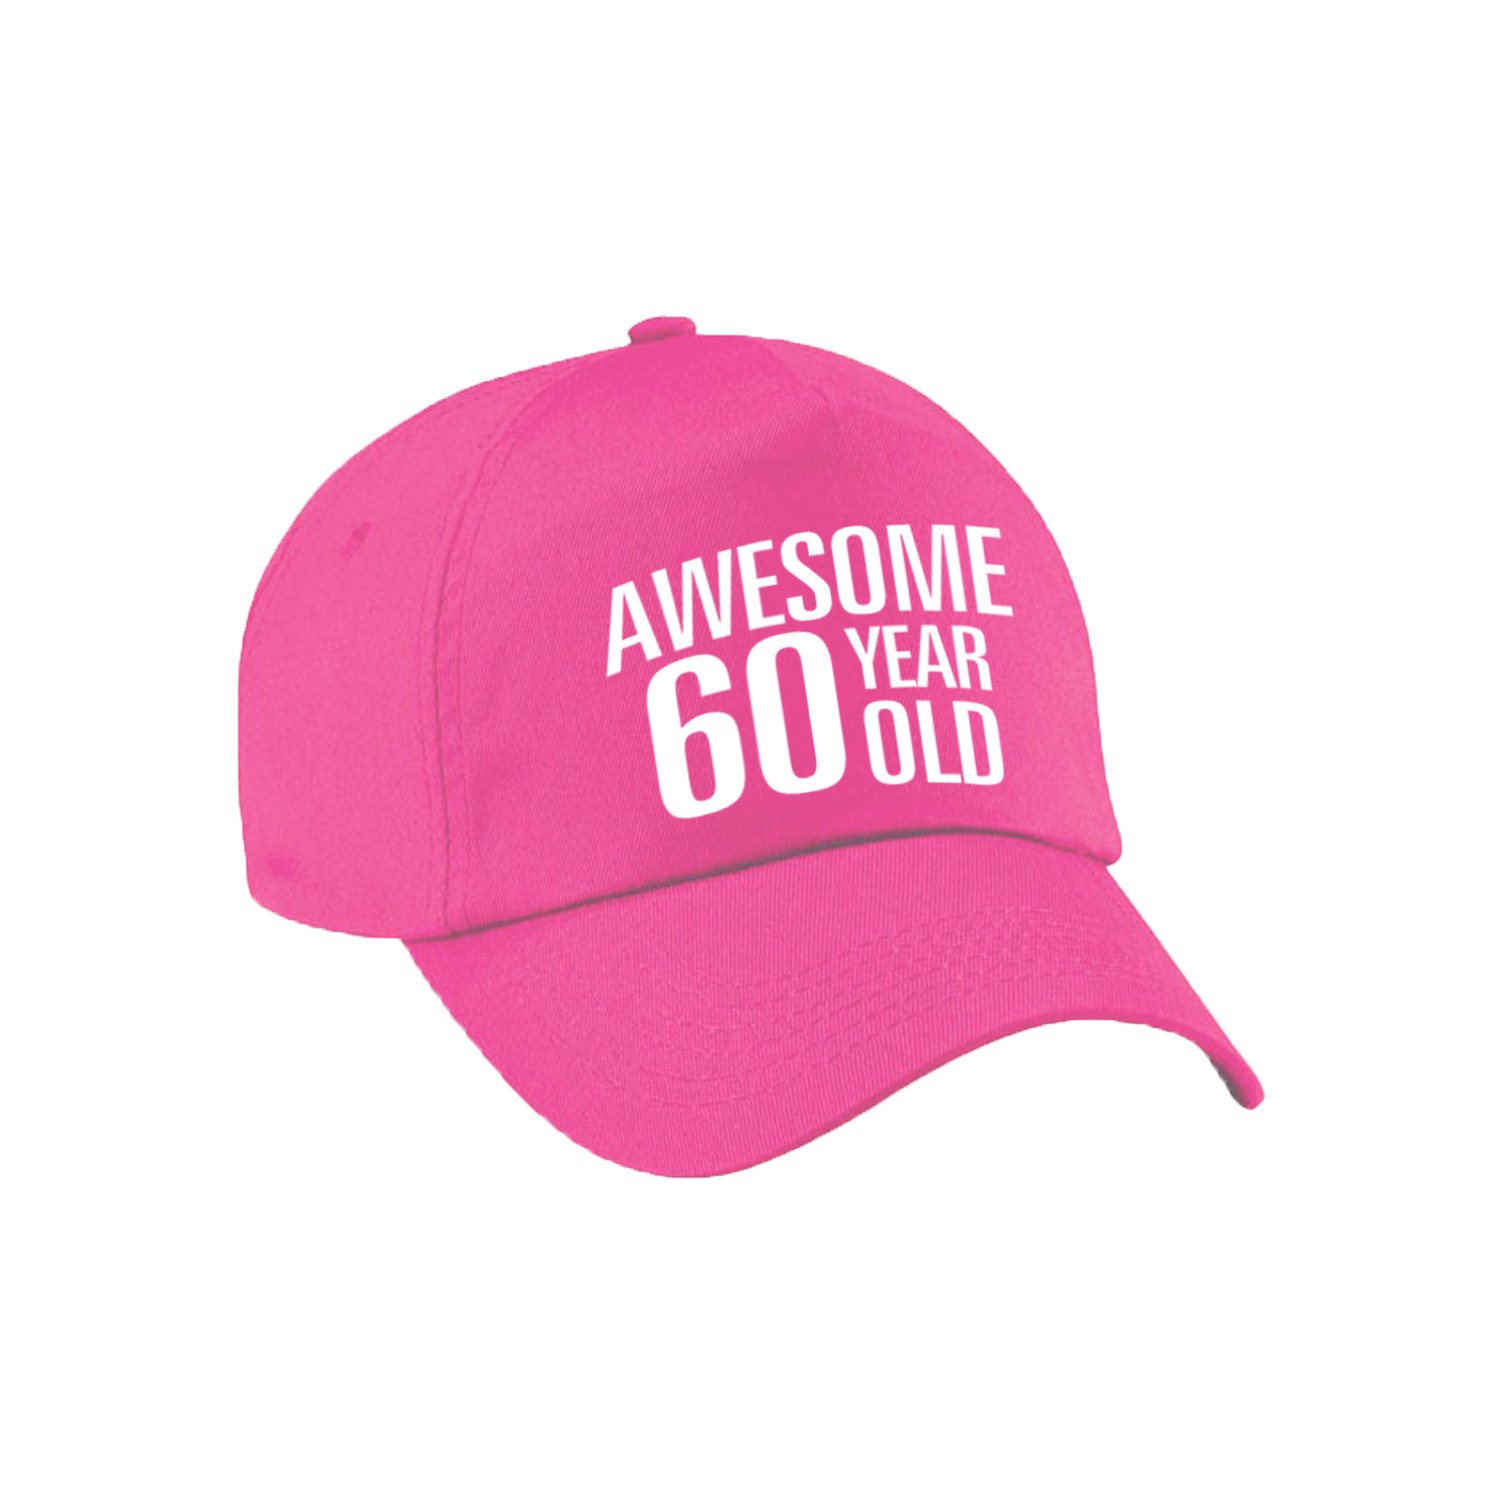 Awesome 60 year old verjaardag pet / cap roze voor dames en heren